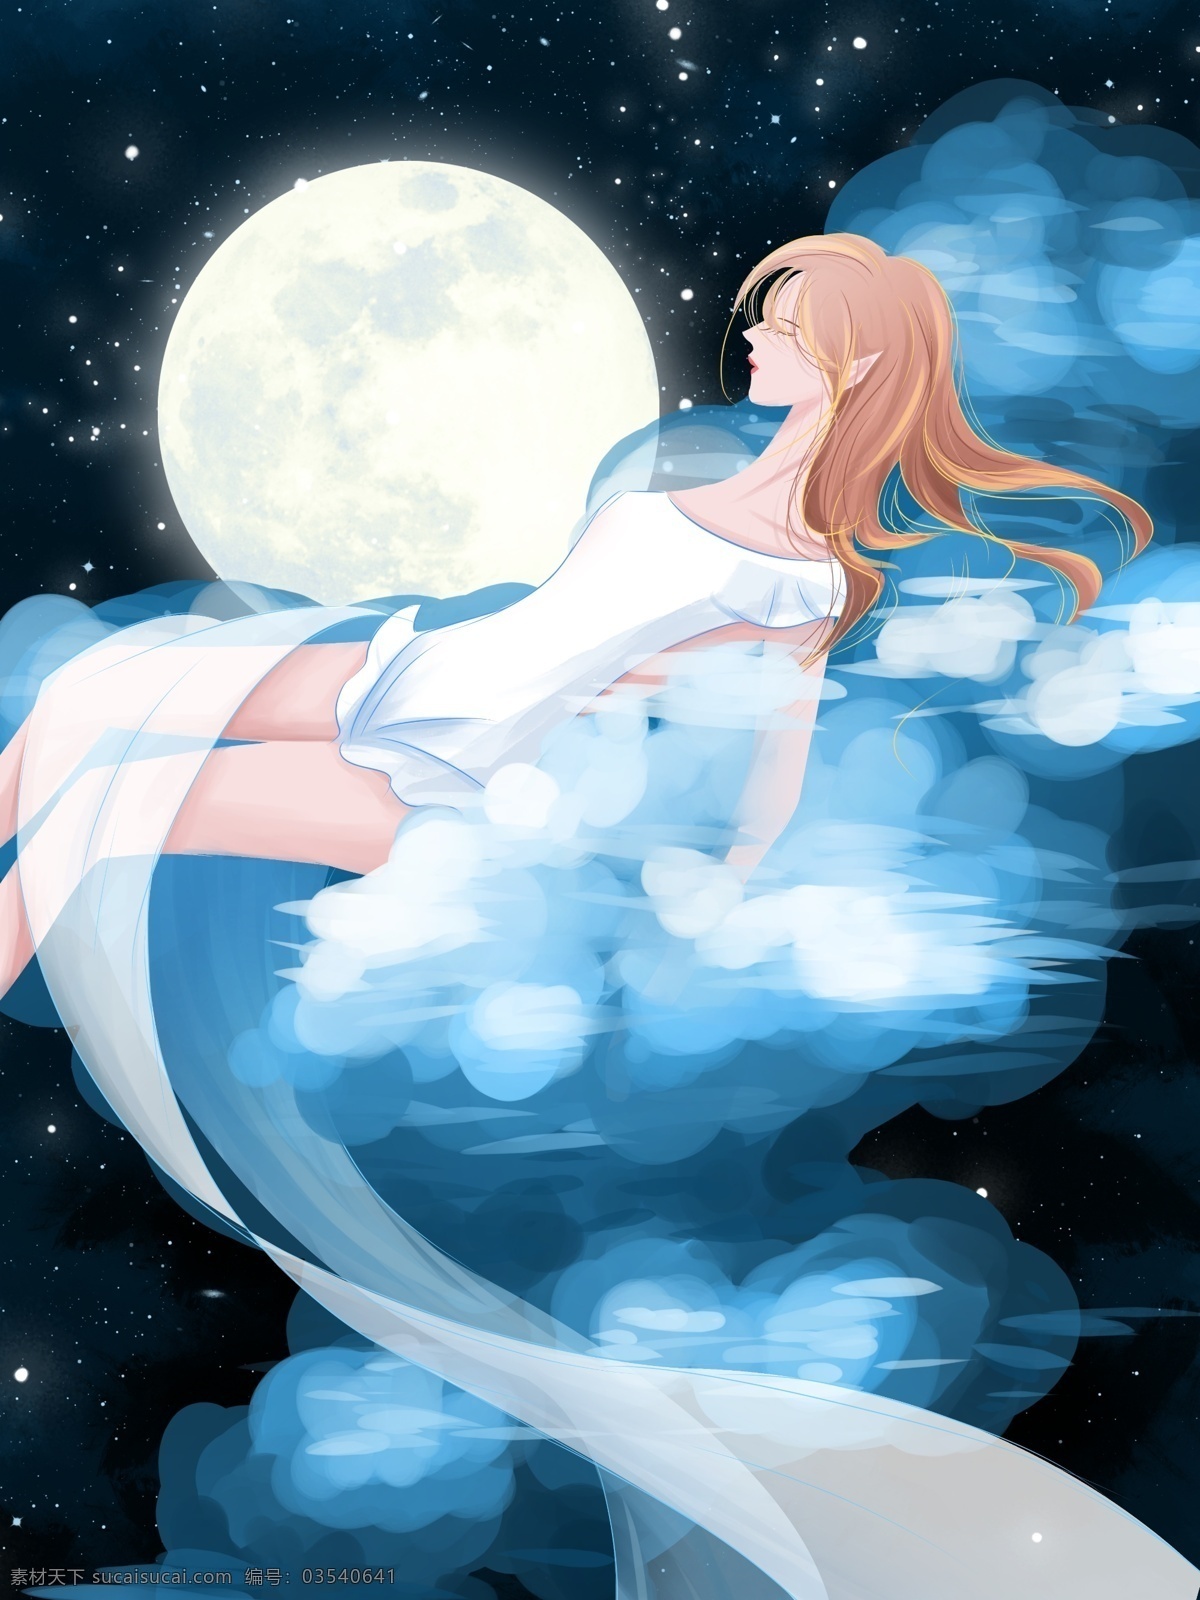 晚安 世界 治愈 系 插画 睡 云朵 上 女孩 星空 云 蓝色 梦幻 清新 晚安世界 月 壁纸 背景 日签